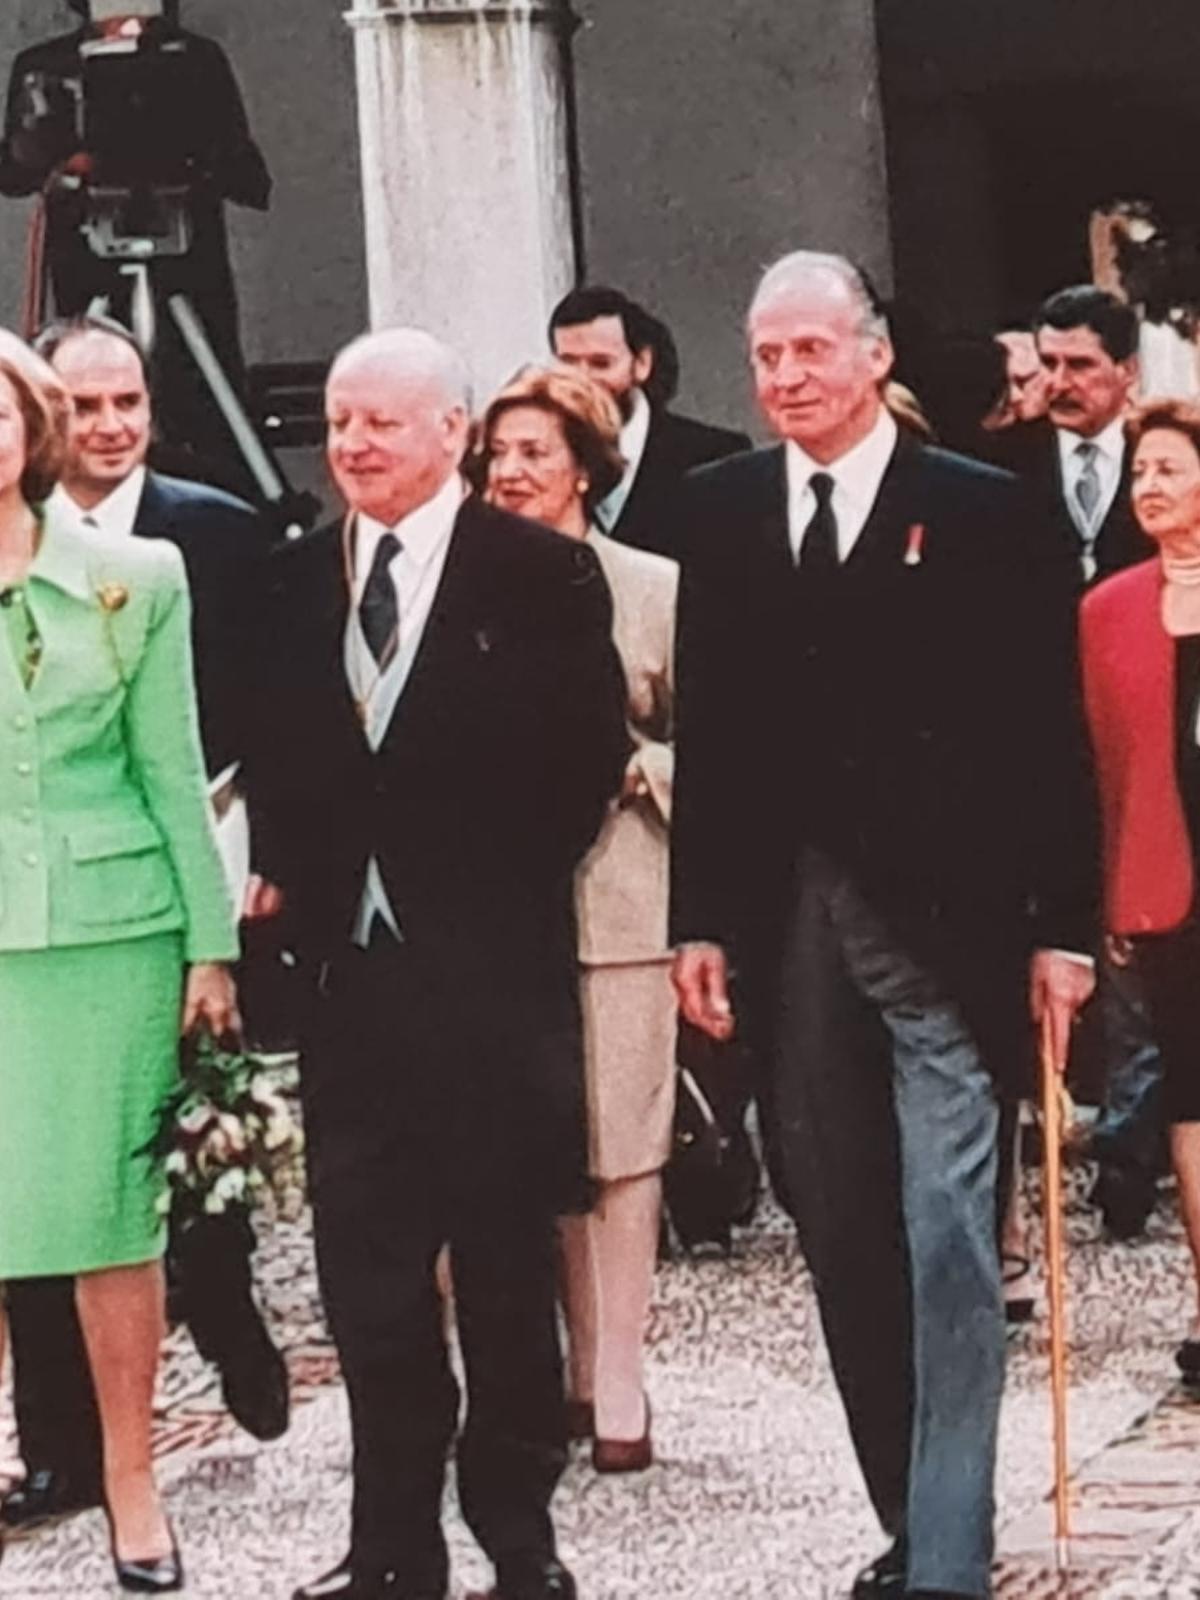 Edwards, en un acto oficial con los Reyes Don Juan Carlos y Doña Sofía.